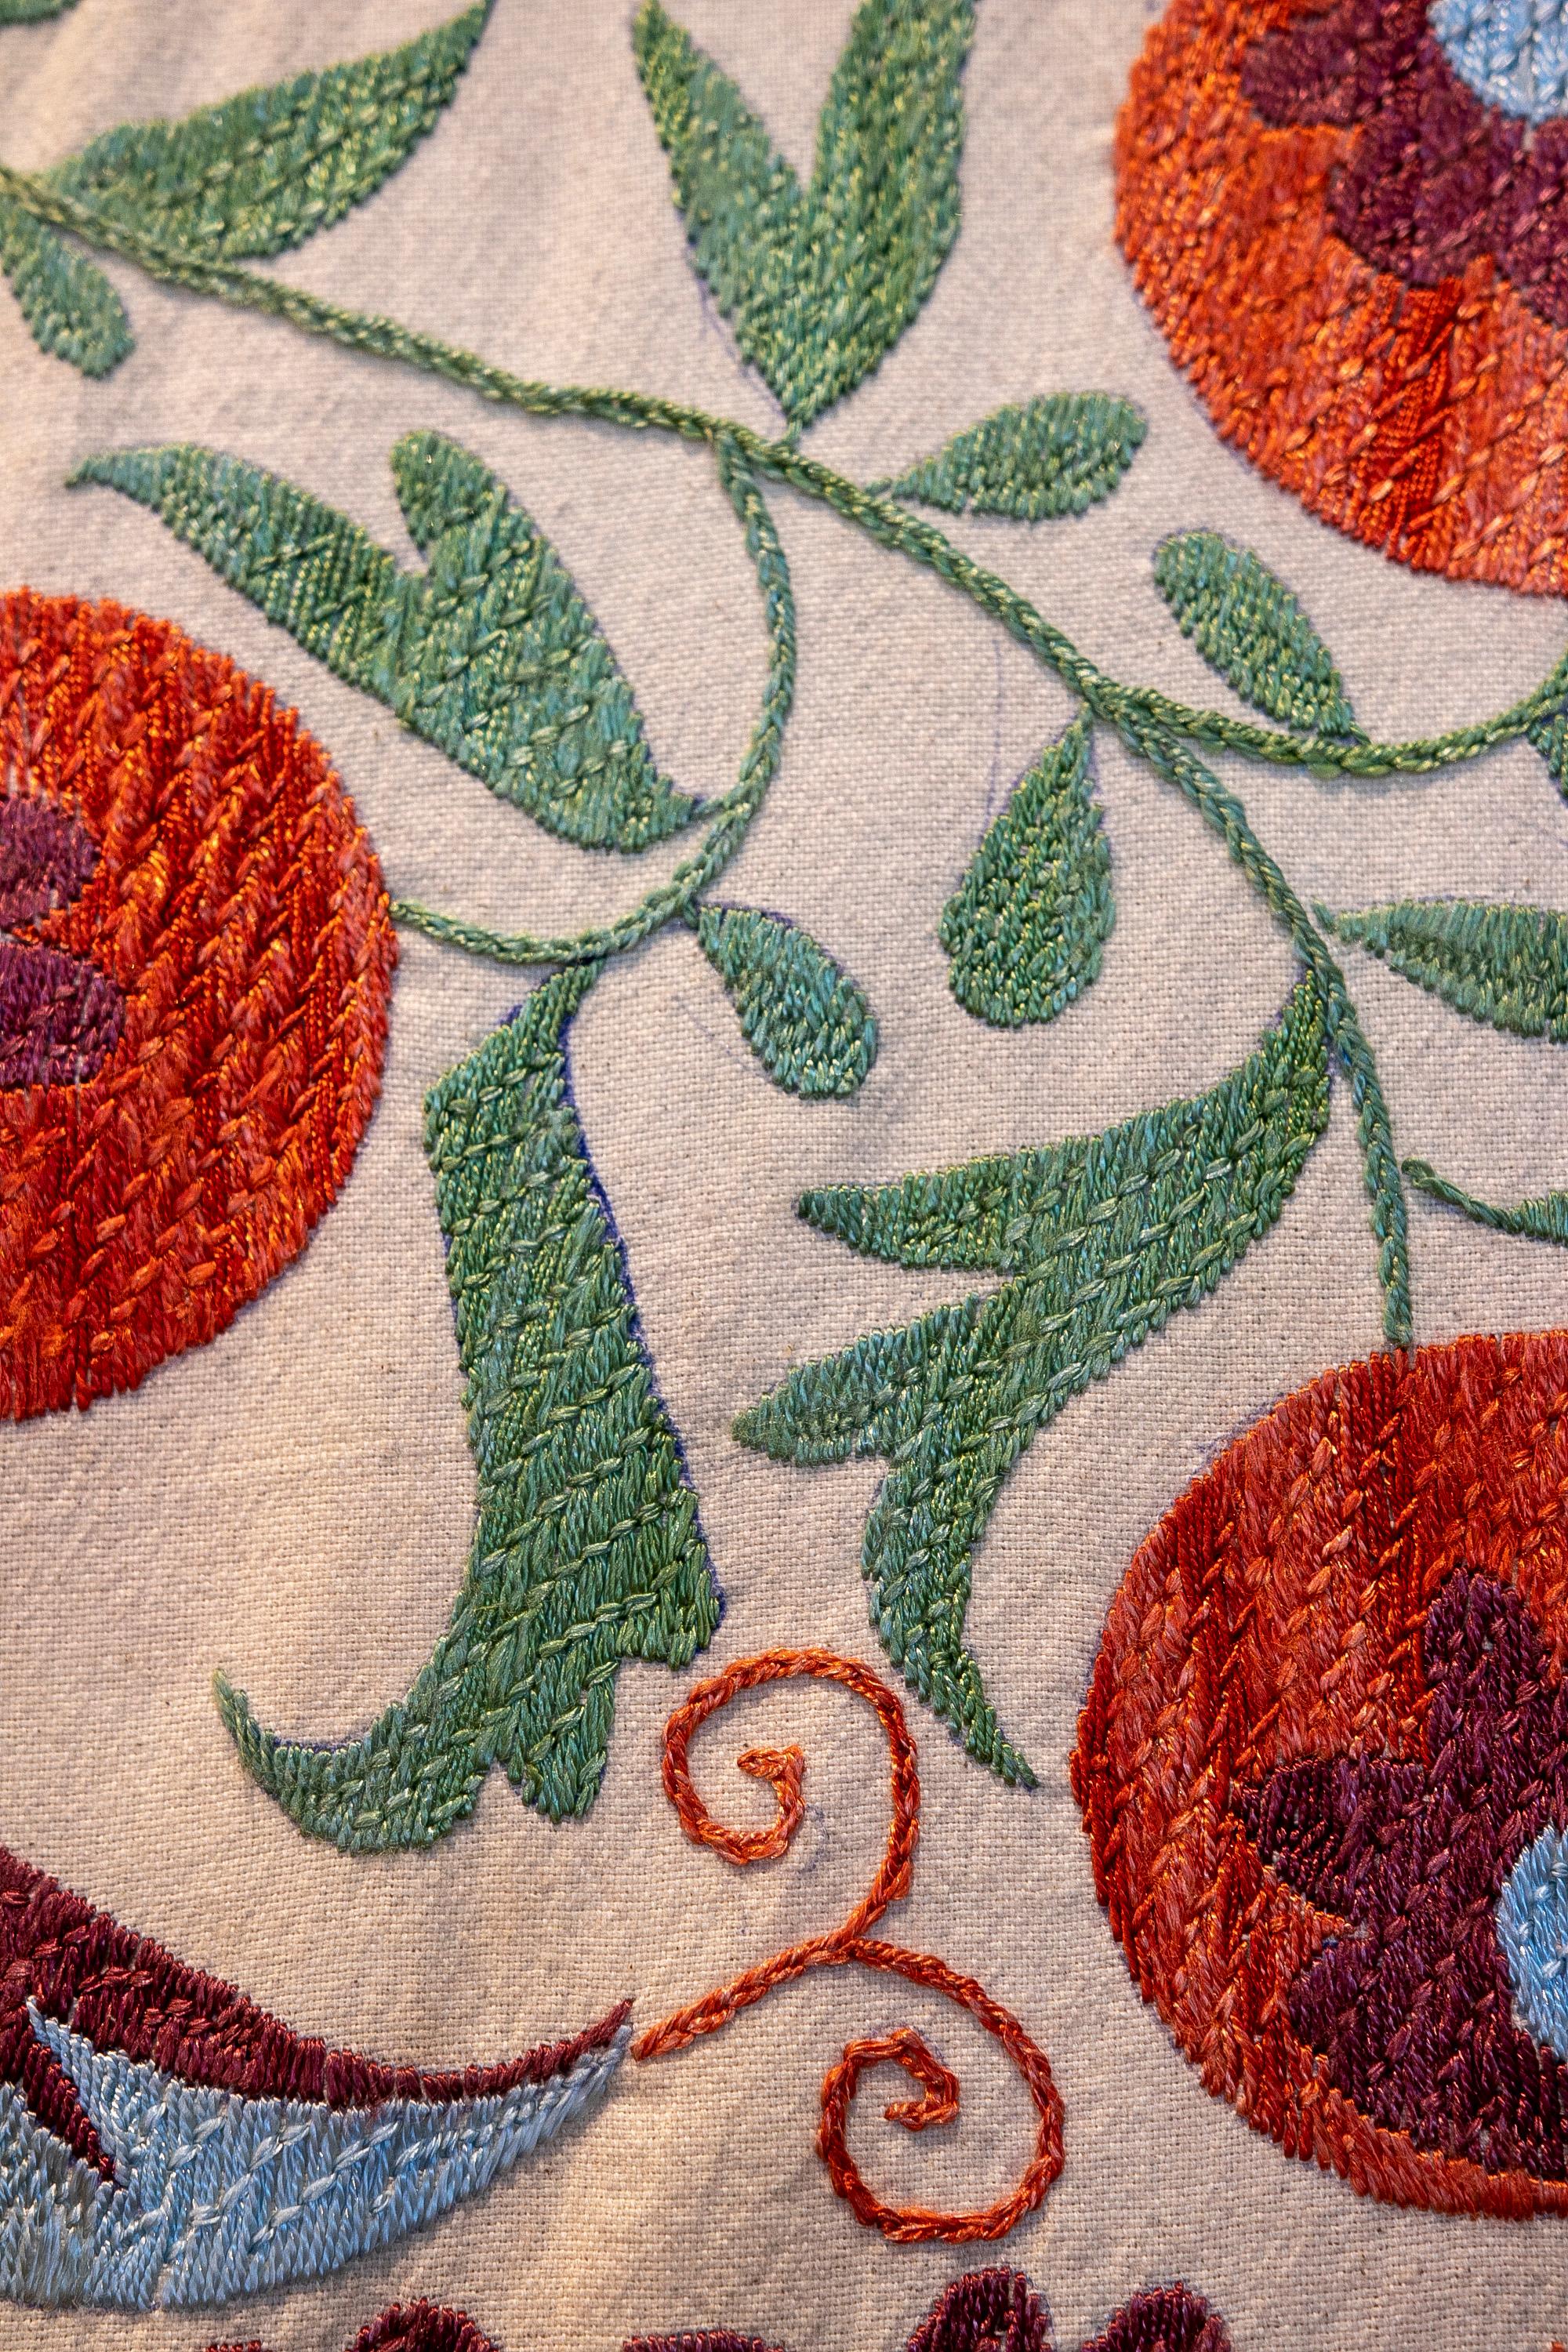 1970s Uzbekistan Hand Stitched Fabric Known as Suzani  8